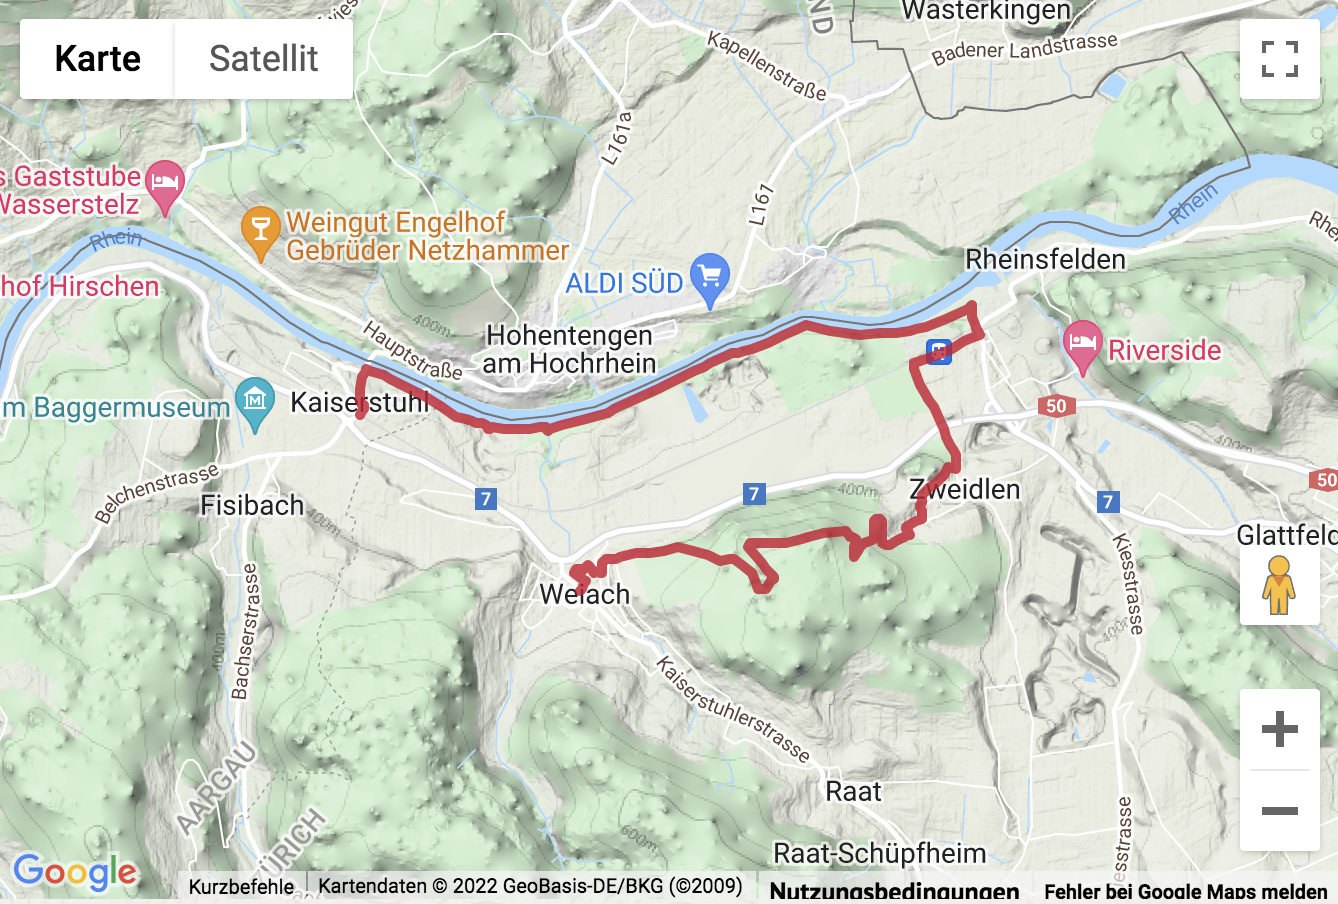 Übersichtskarte Wanderung Weiach - Leuenchopf - Zweidlen - Kaiserstuhl